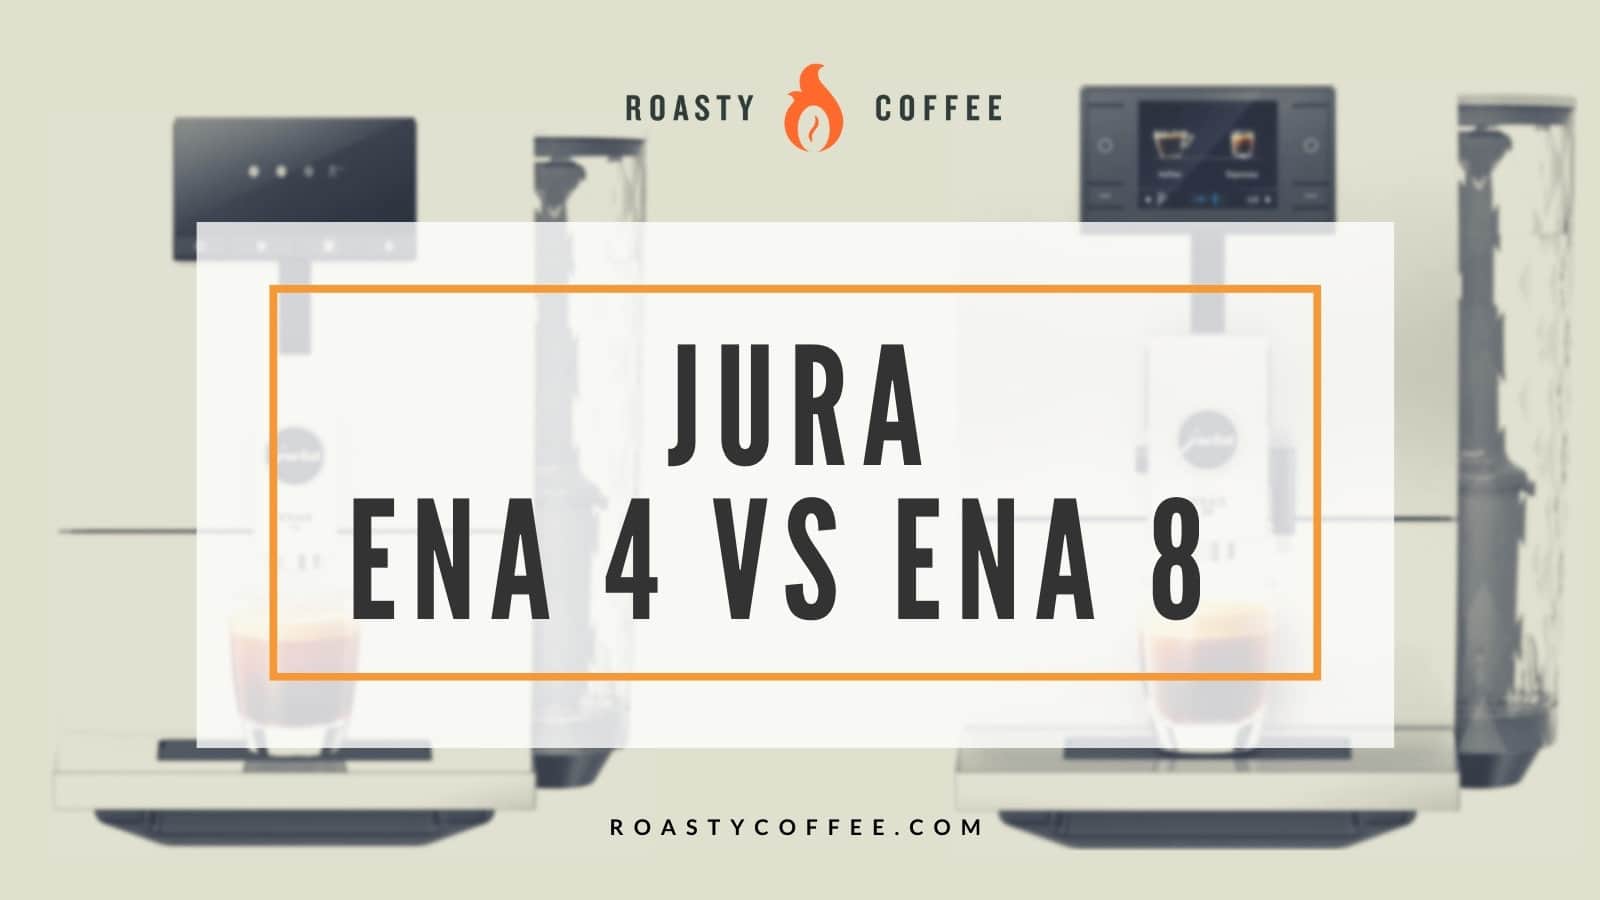 JURA ENA 4 VS ENA 8